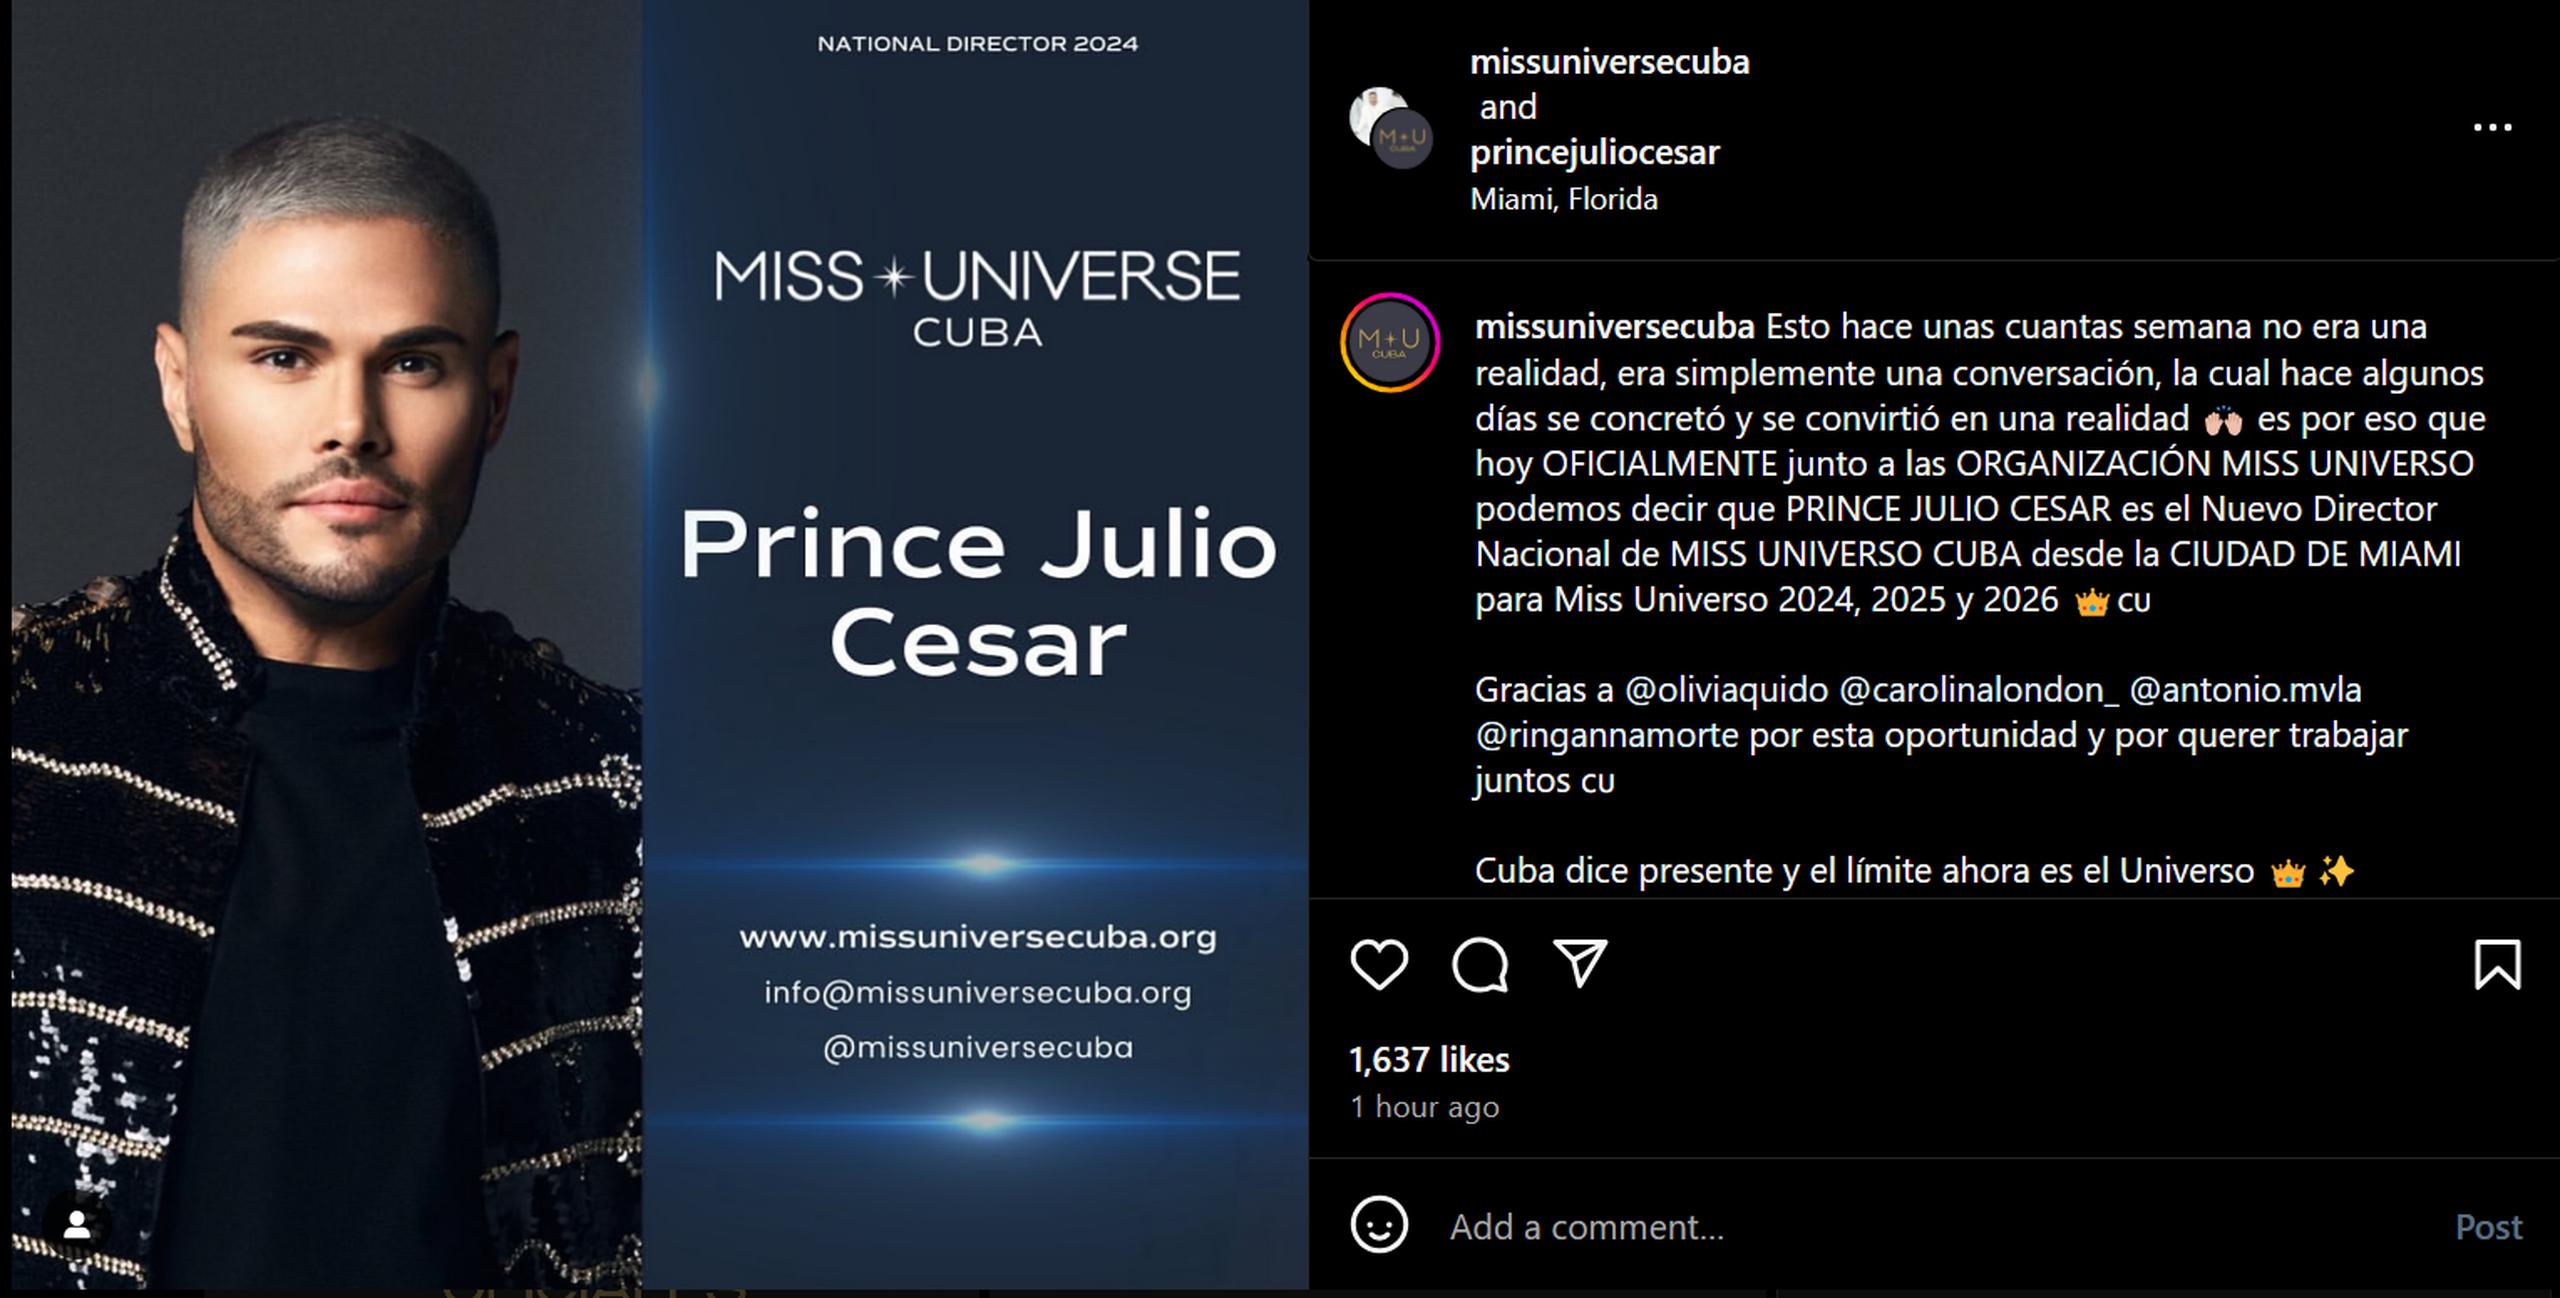 Miss Universe Cuba presentó a su nuevo director nacional, Prince Julio César, en sus redes sociales.